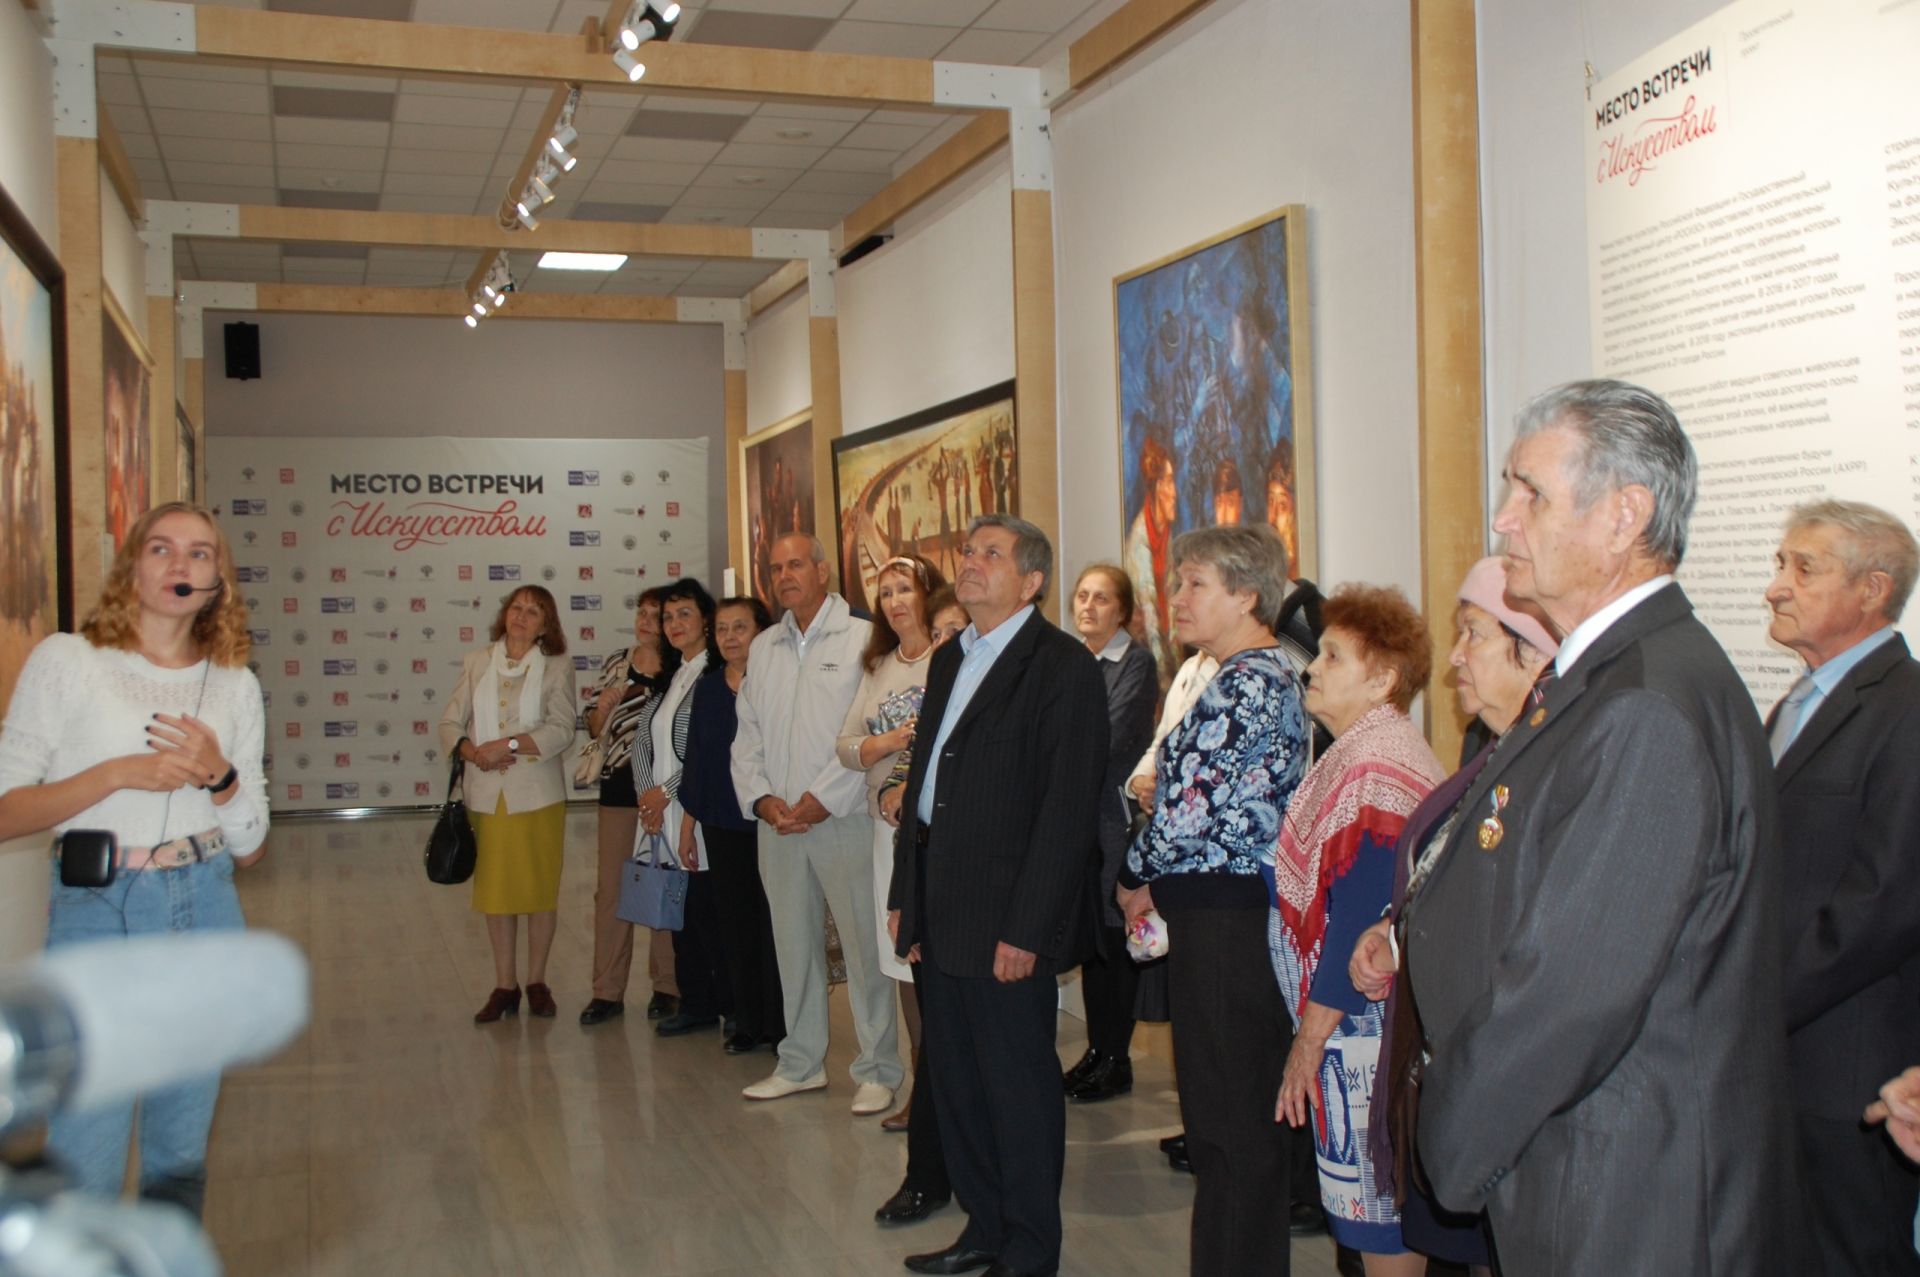 Заинские пенсионеры посетили выставку "Место встречи с искусством"